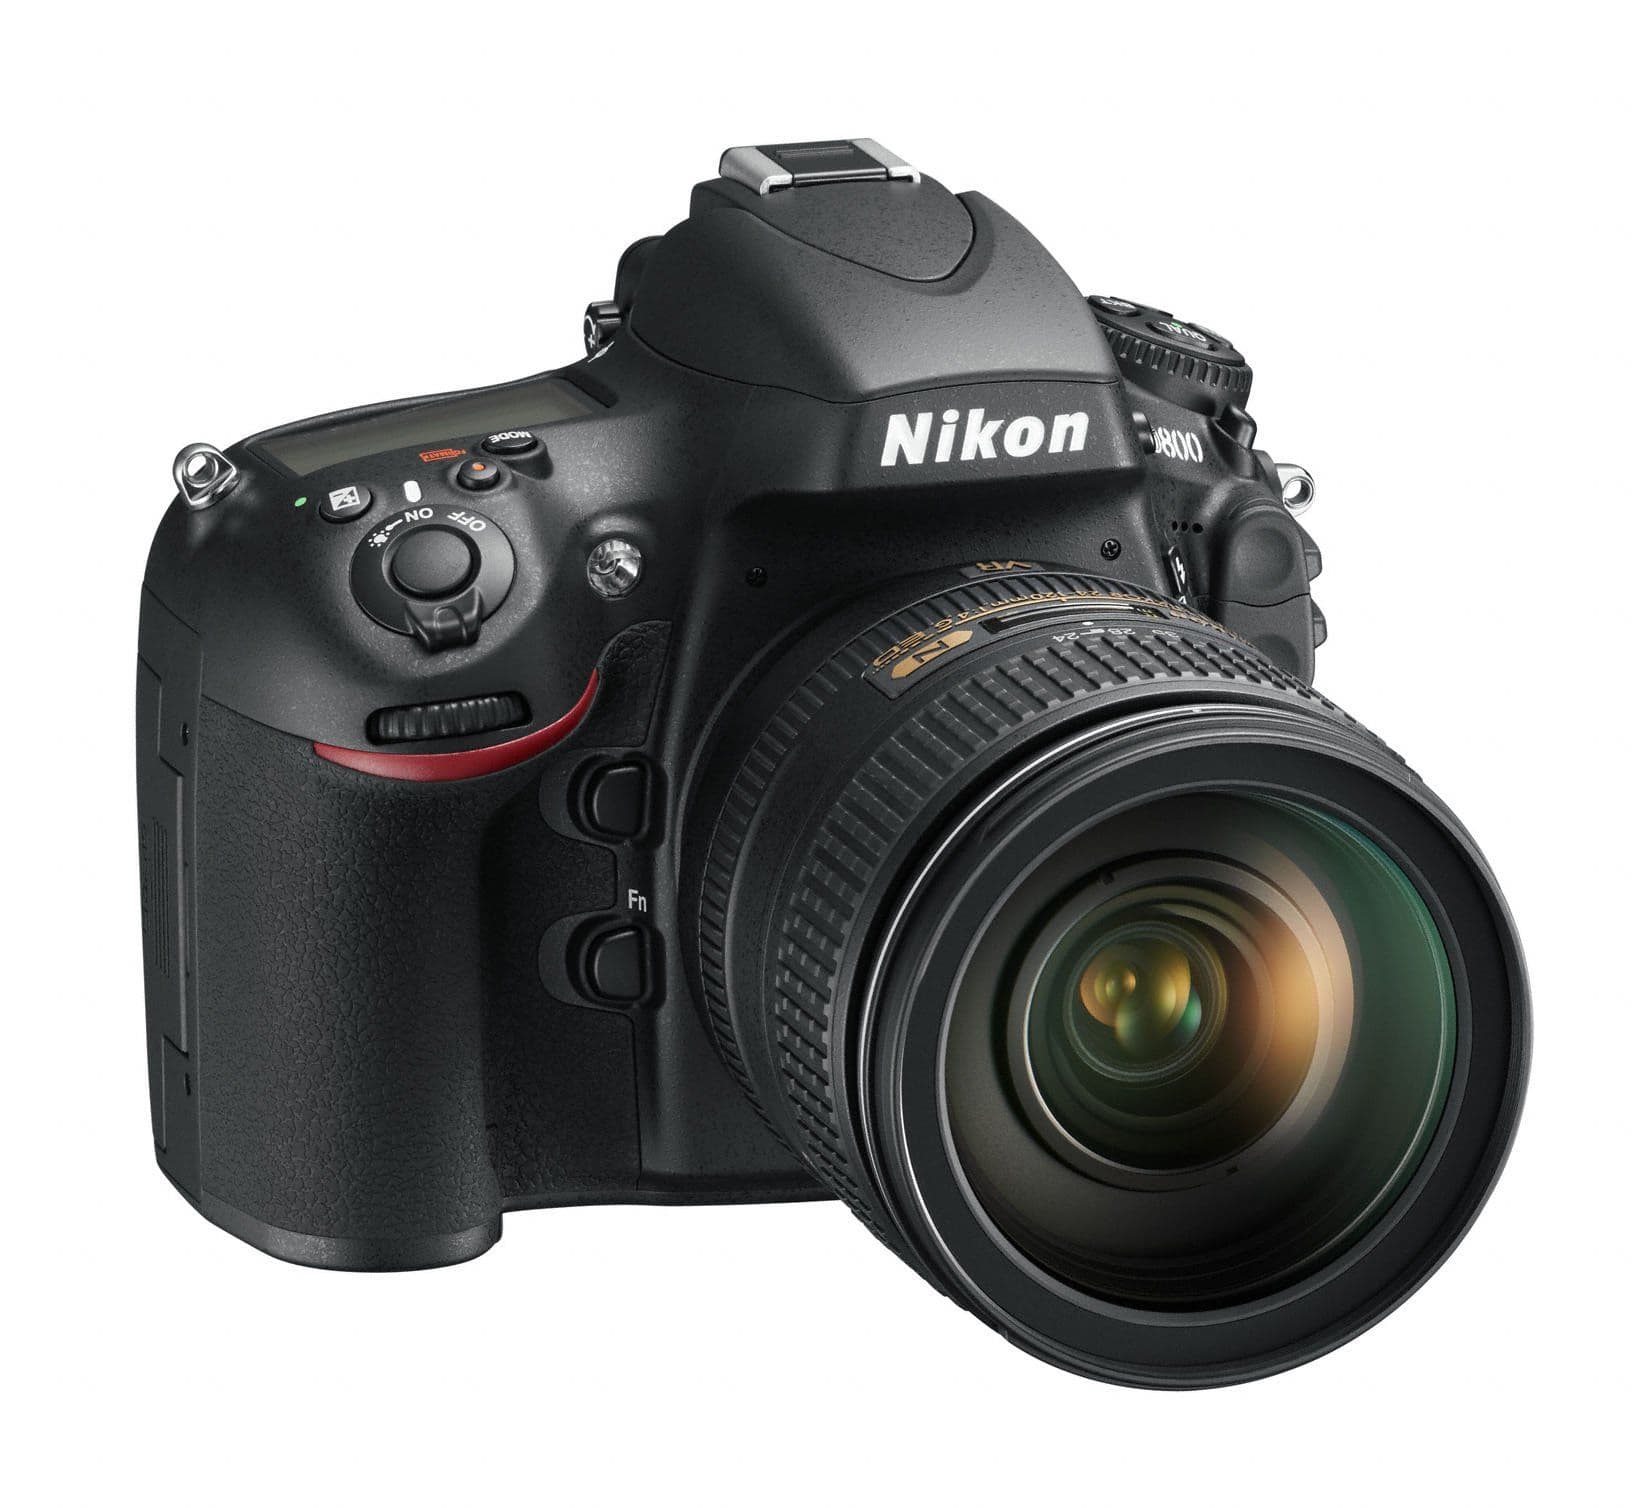 Iconic Nikon cameras - Nikon D800